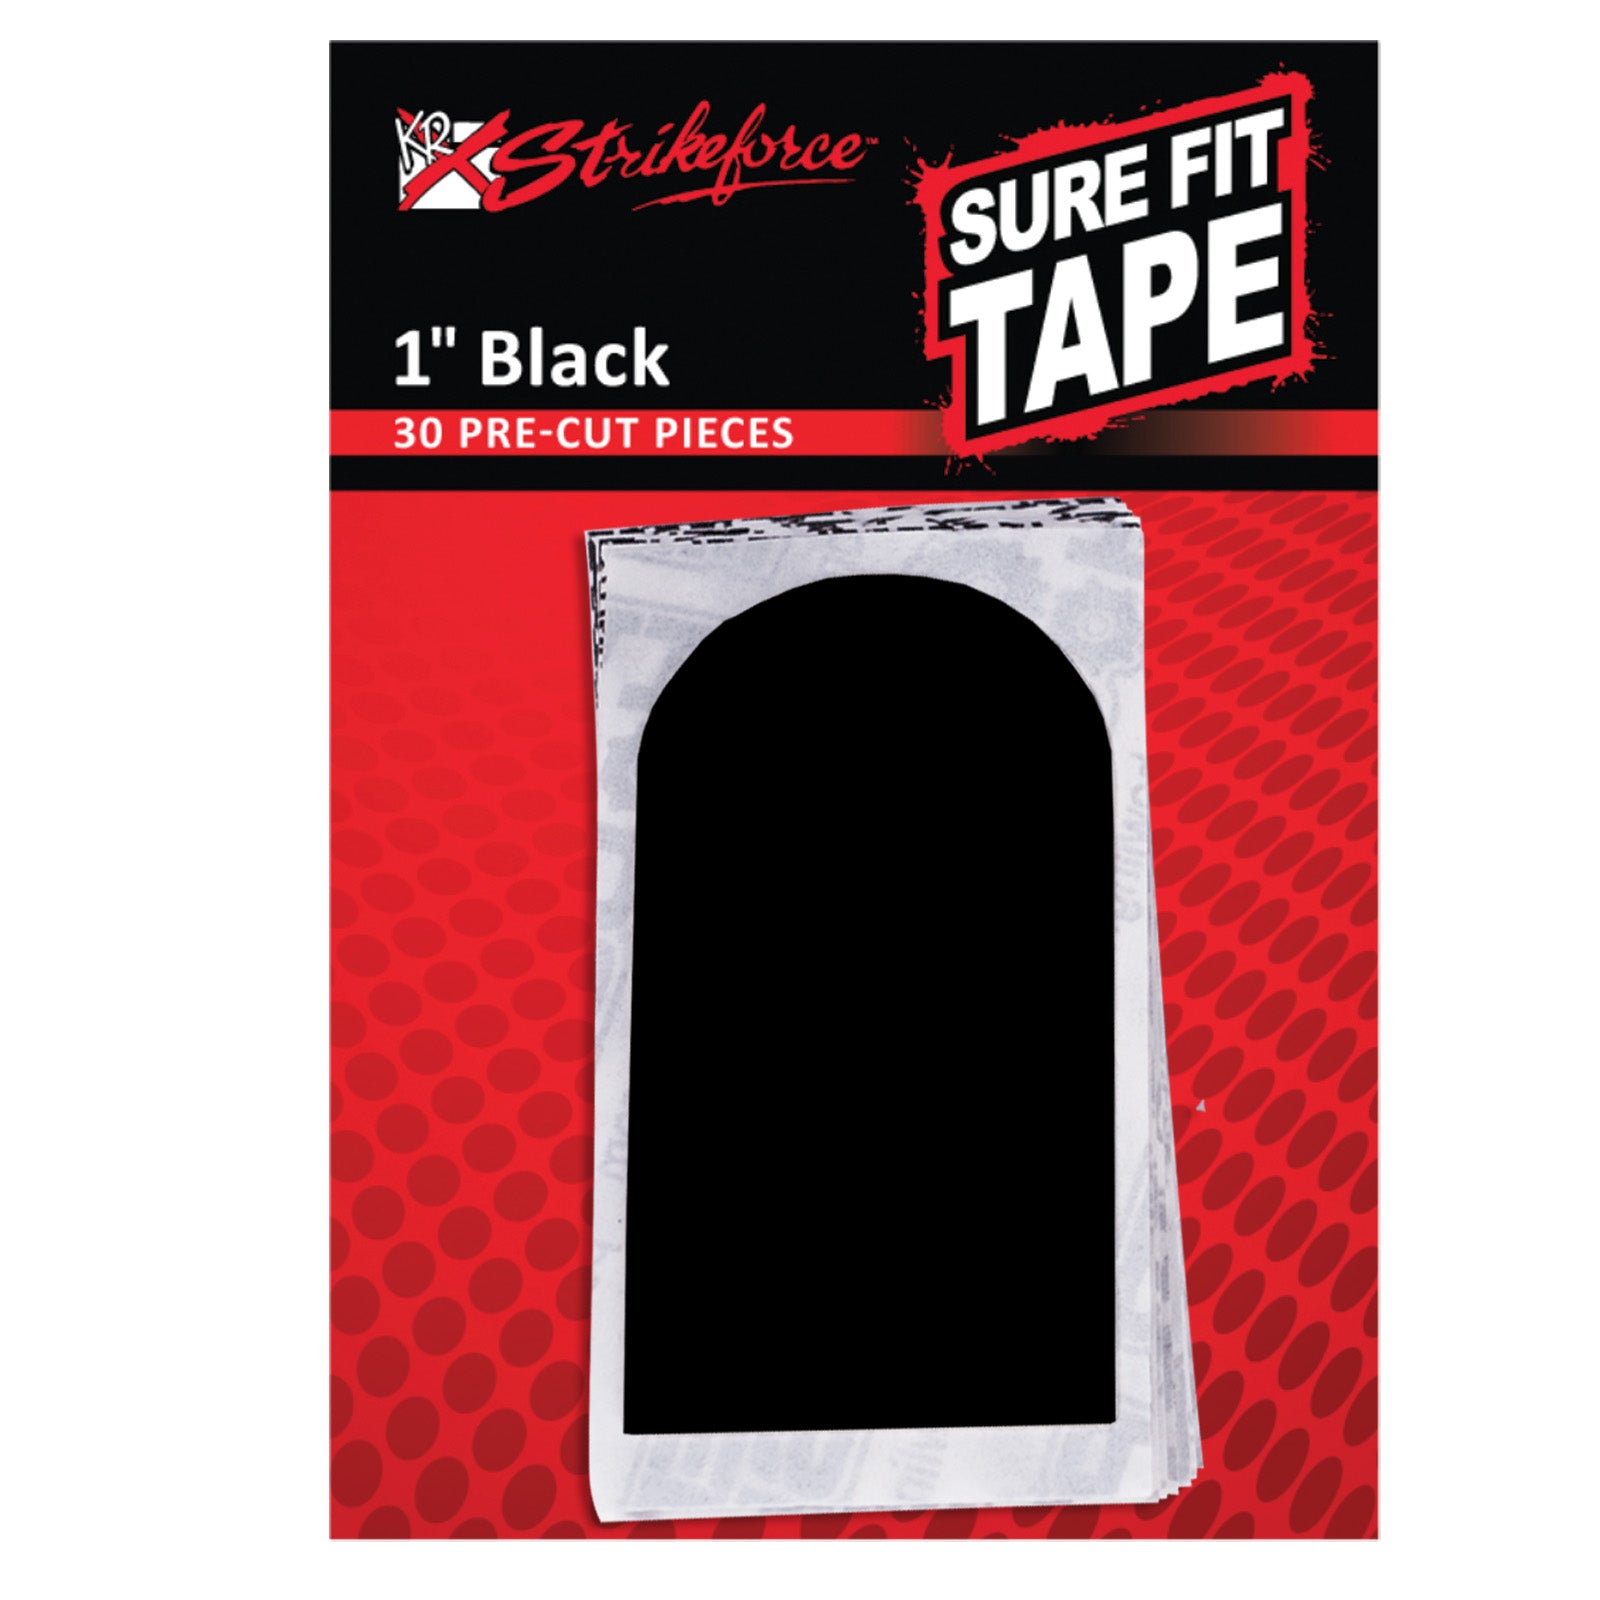 KR Sure Fit Tape 1" Black 30 PC